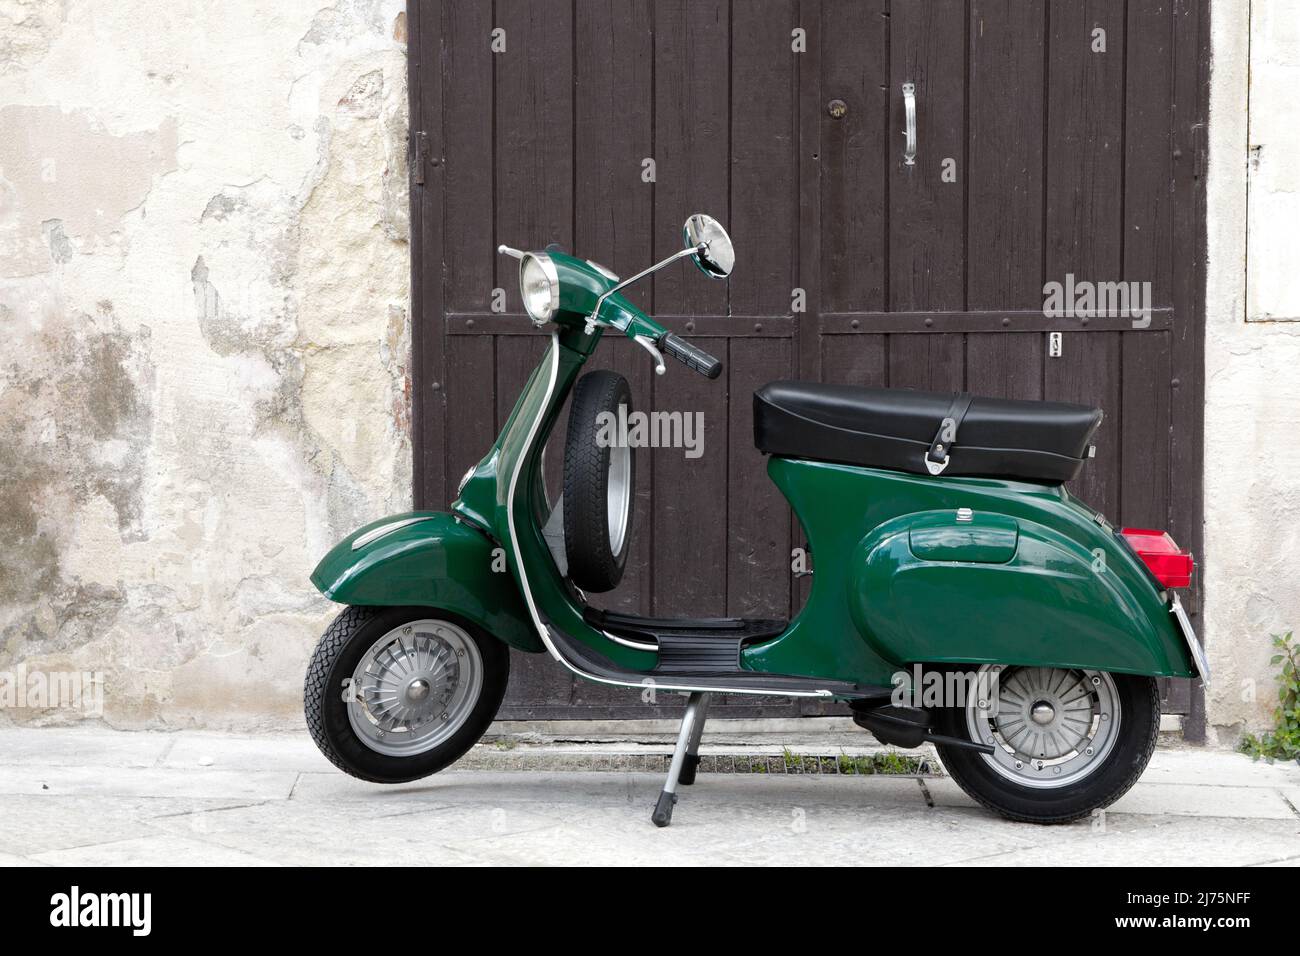 Piaggio Vespa italian scooter Stock Photo - Alamy